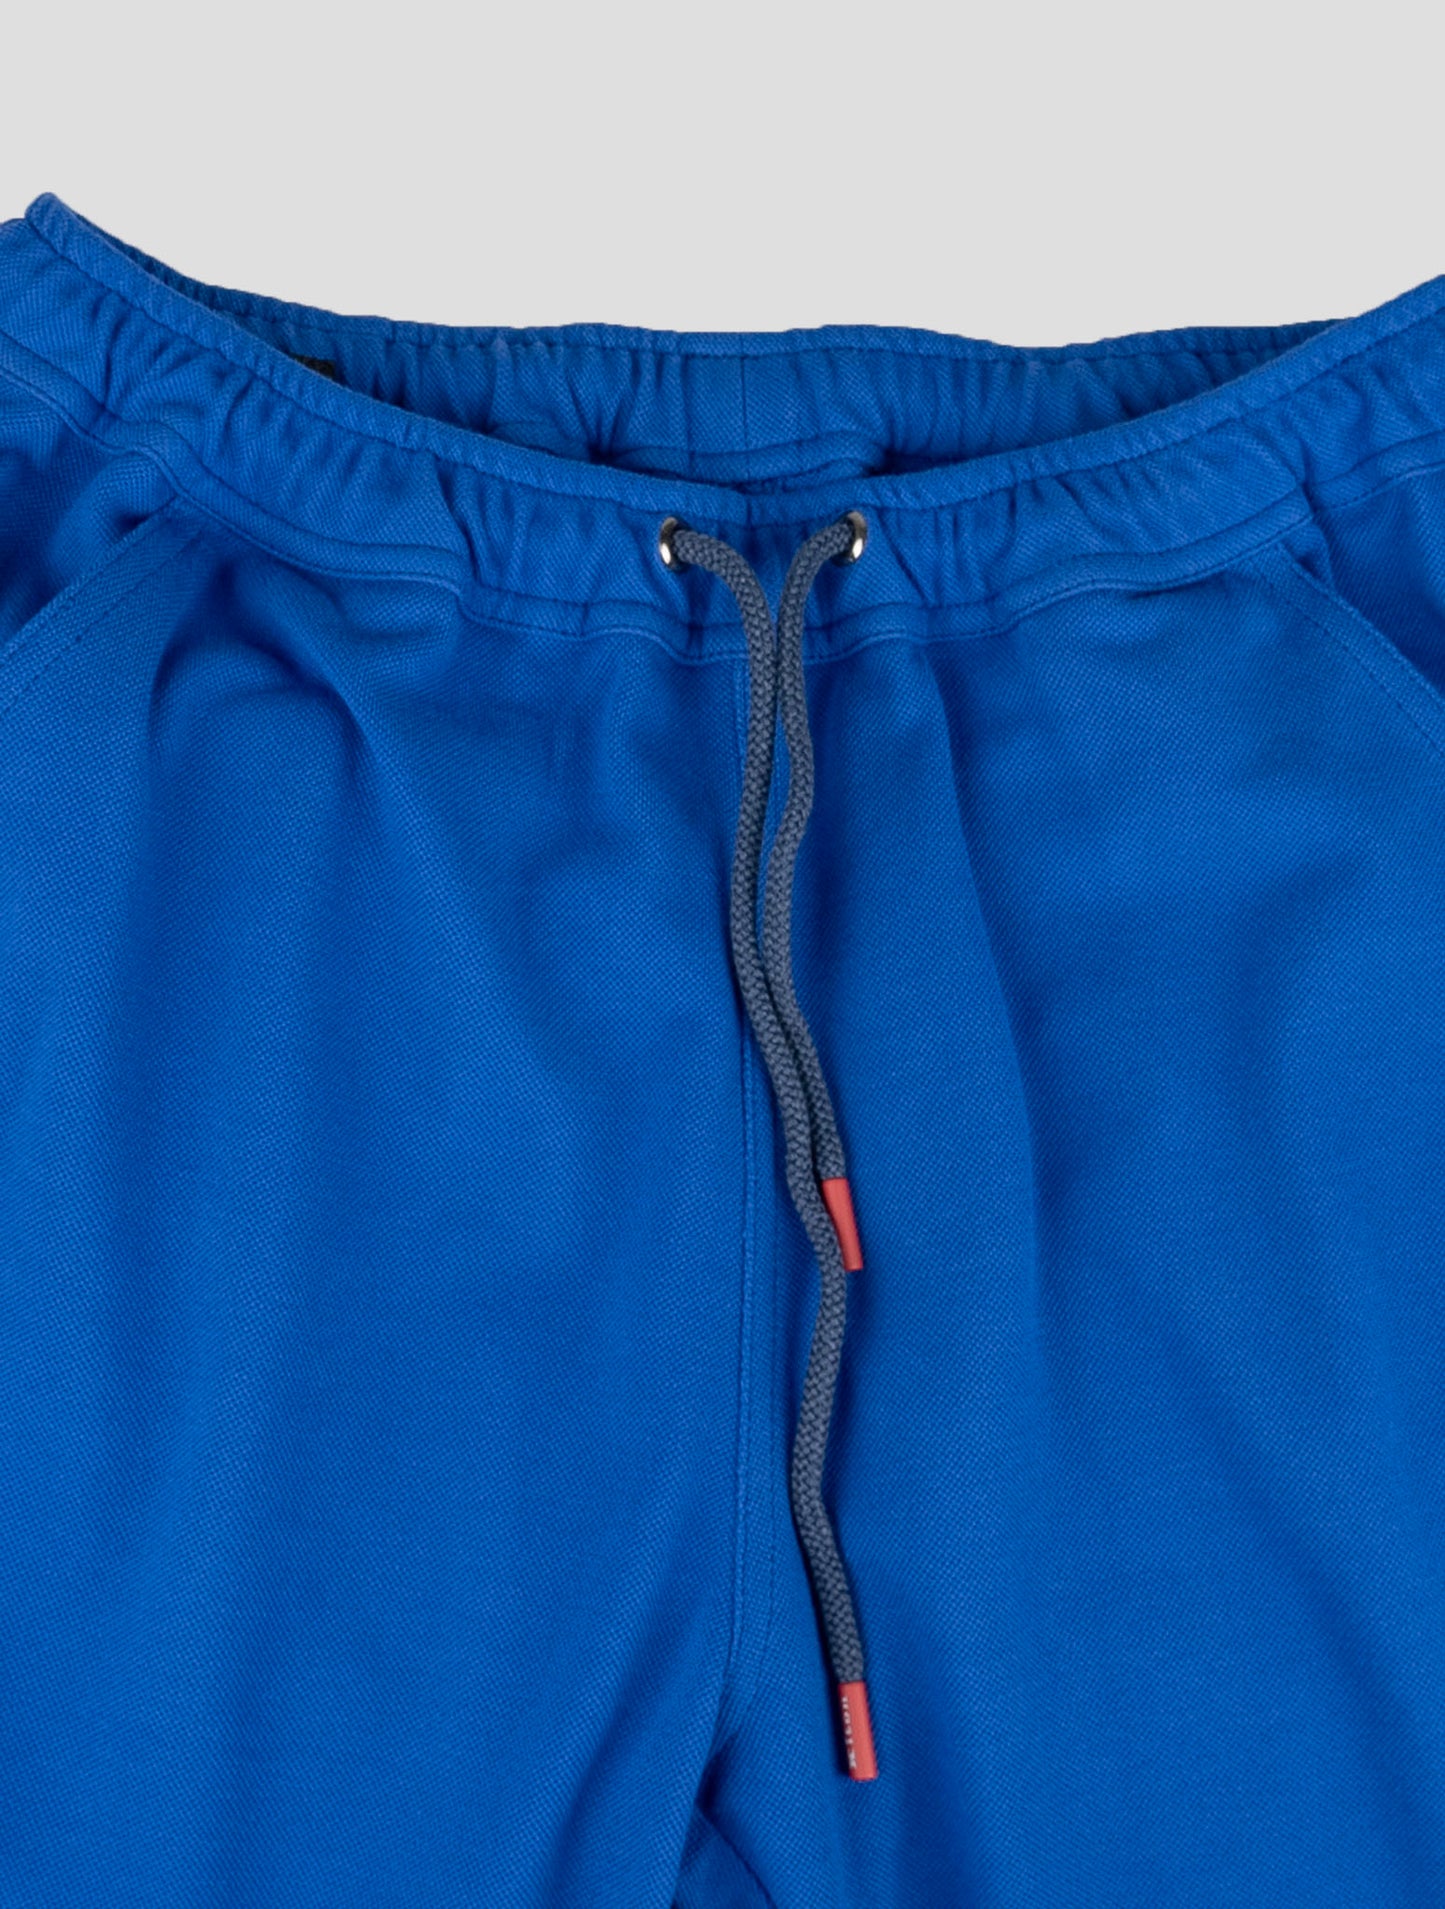 קיטון התאמת בגד-אפור מריאנו וכחול מכנסיים קצרים כחולים